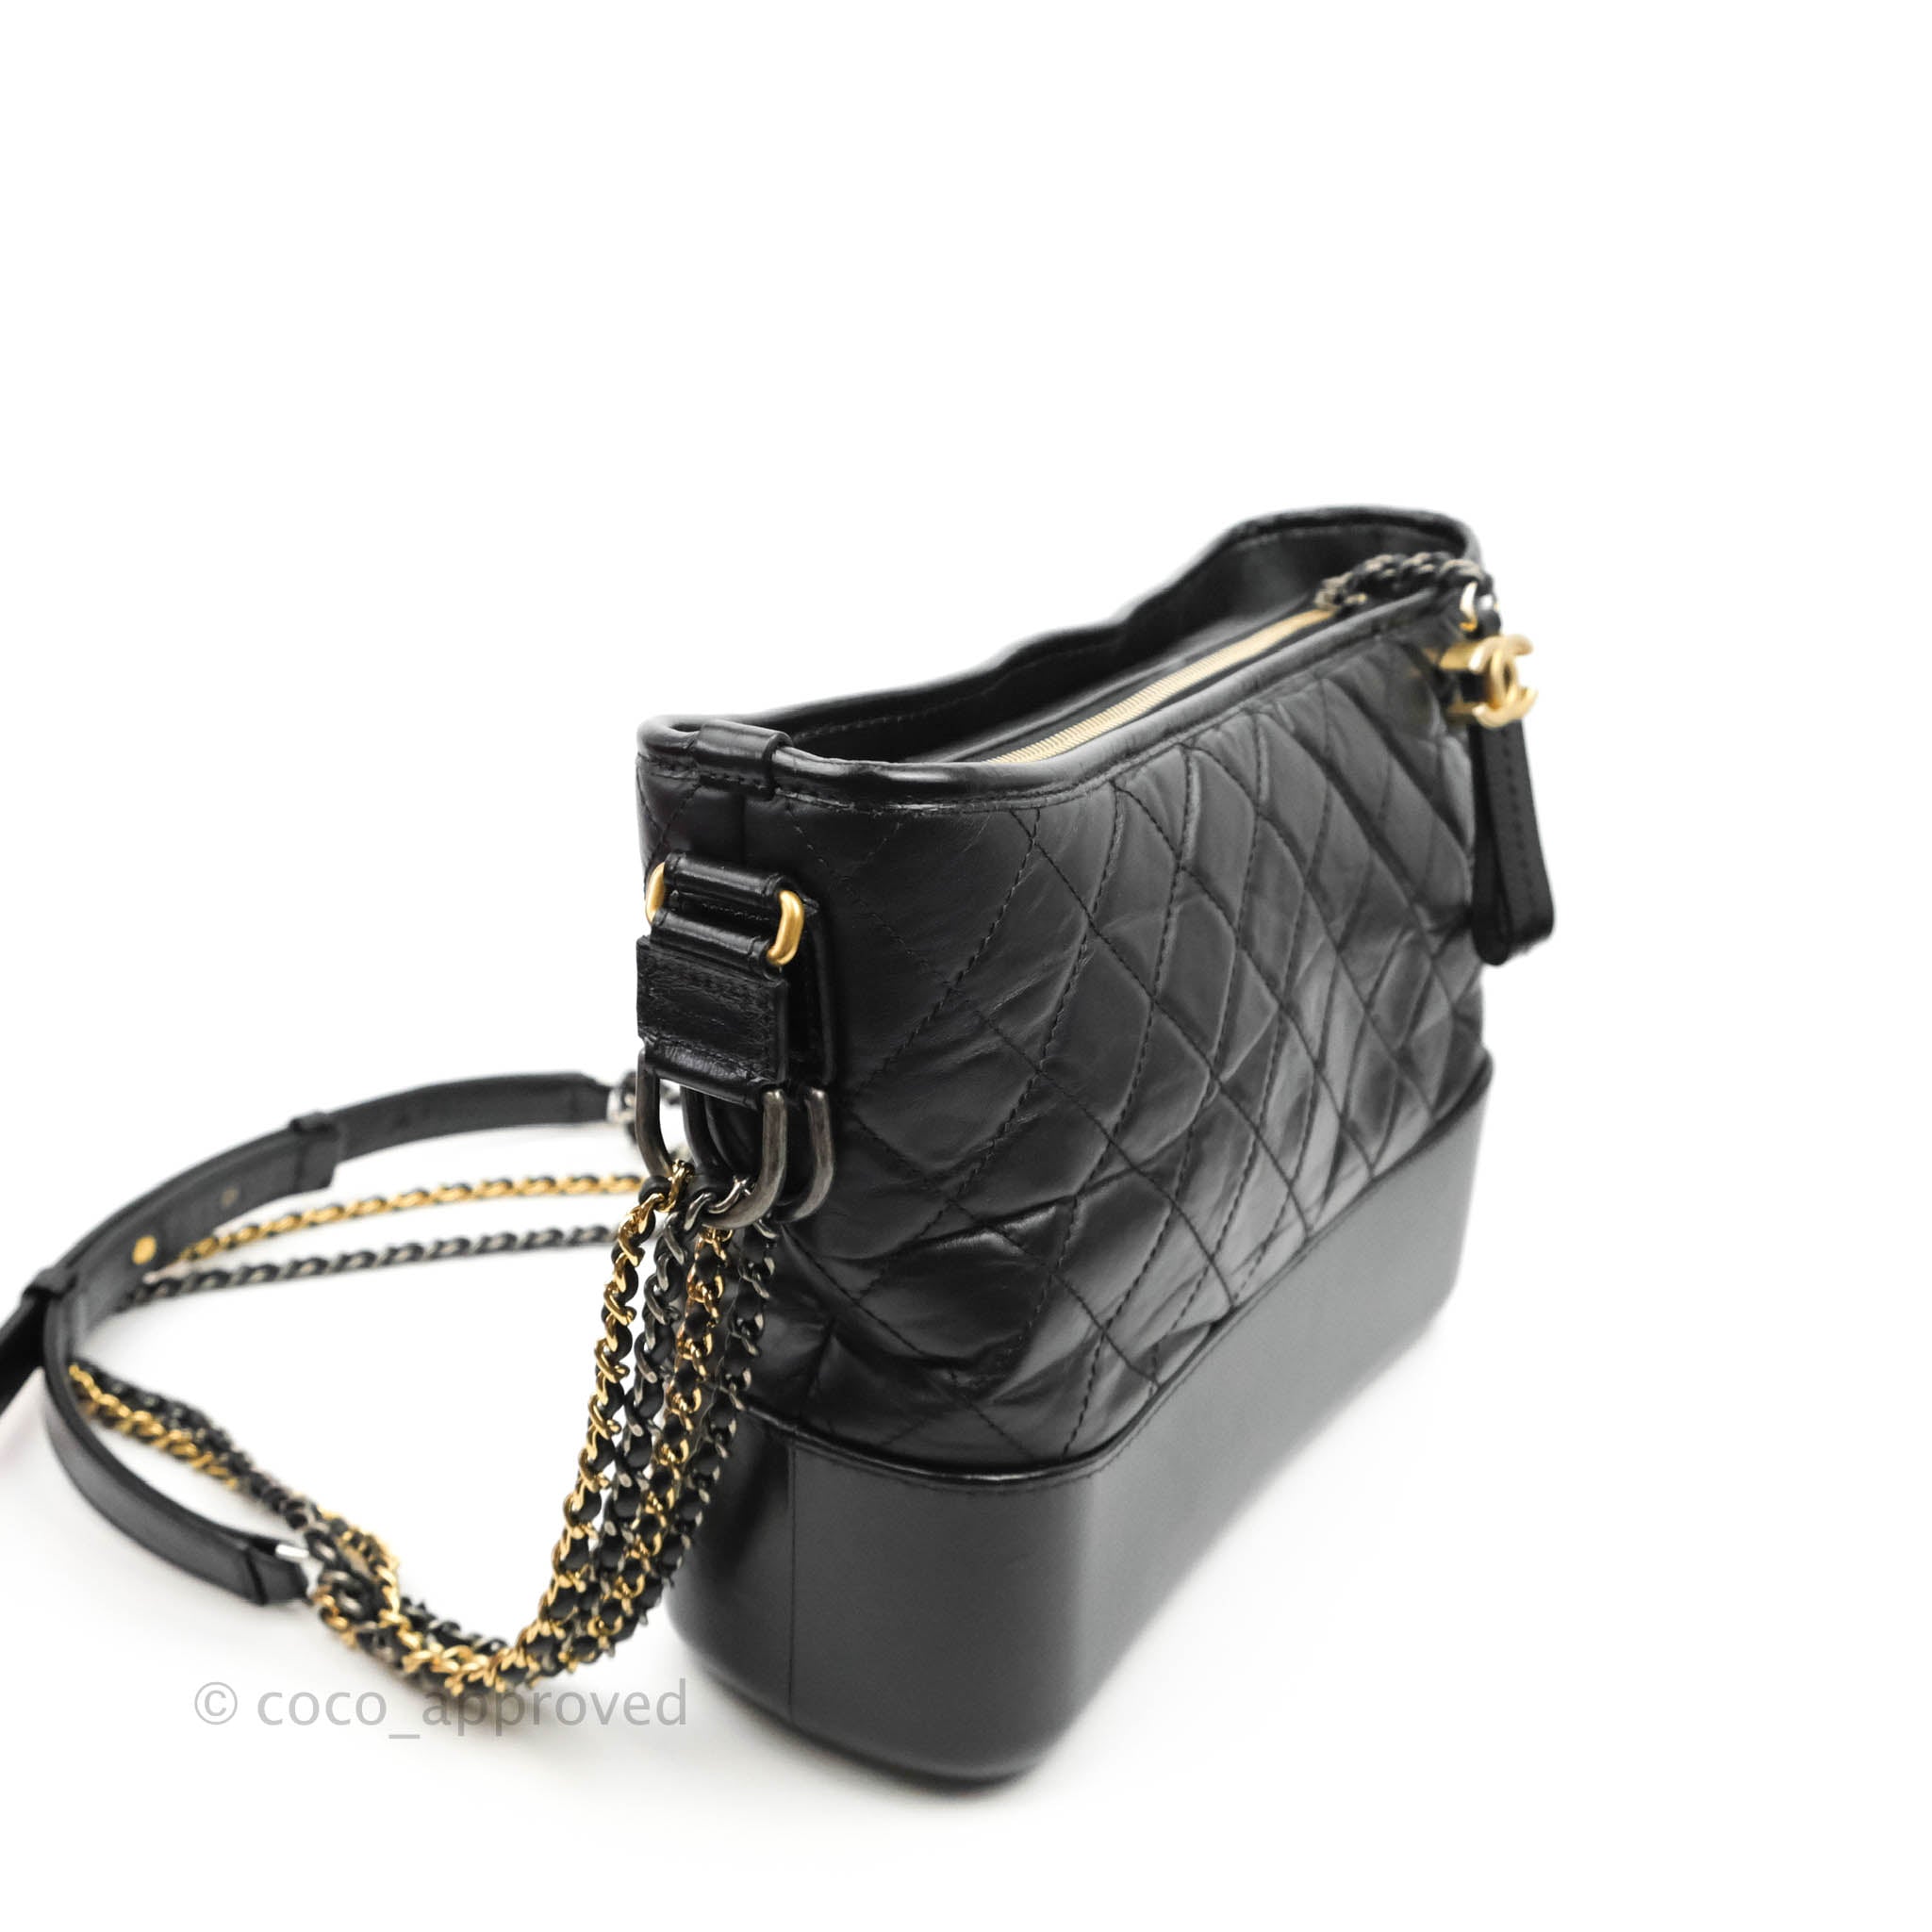 Chanel Medium Tan & Black Gabrielle Quilted Aged Calfskin Hobo (OOZX) 144010019130 RP/SA